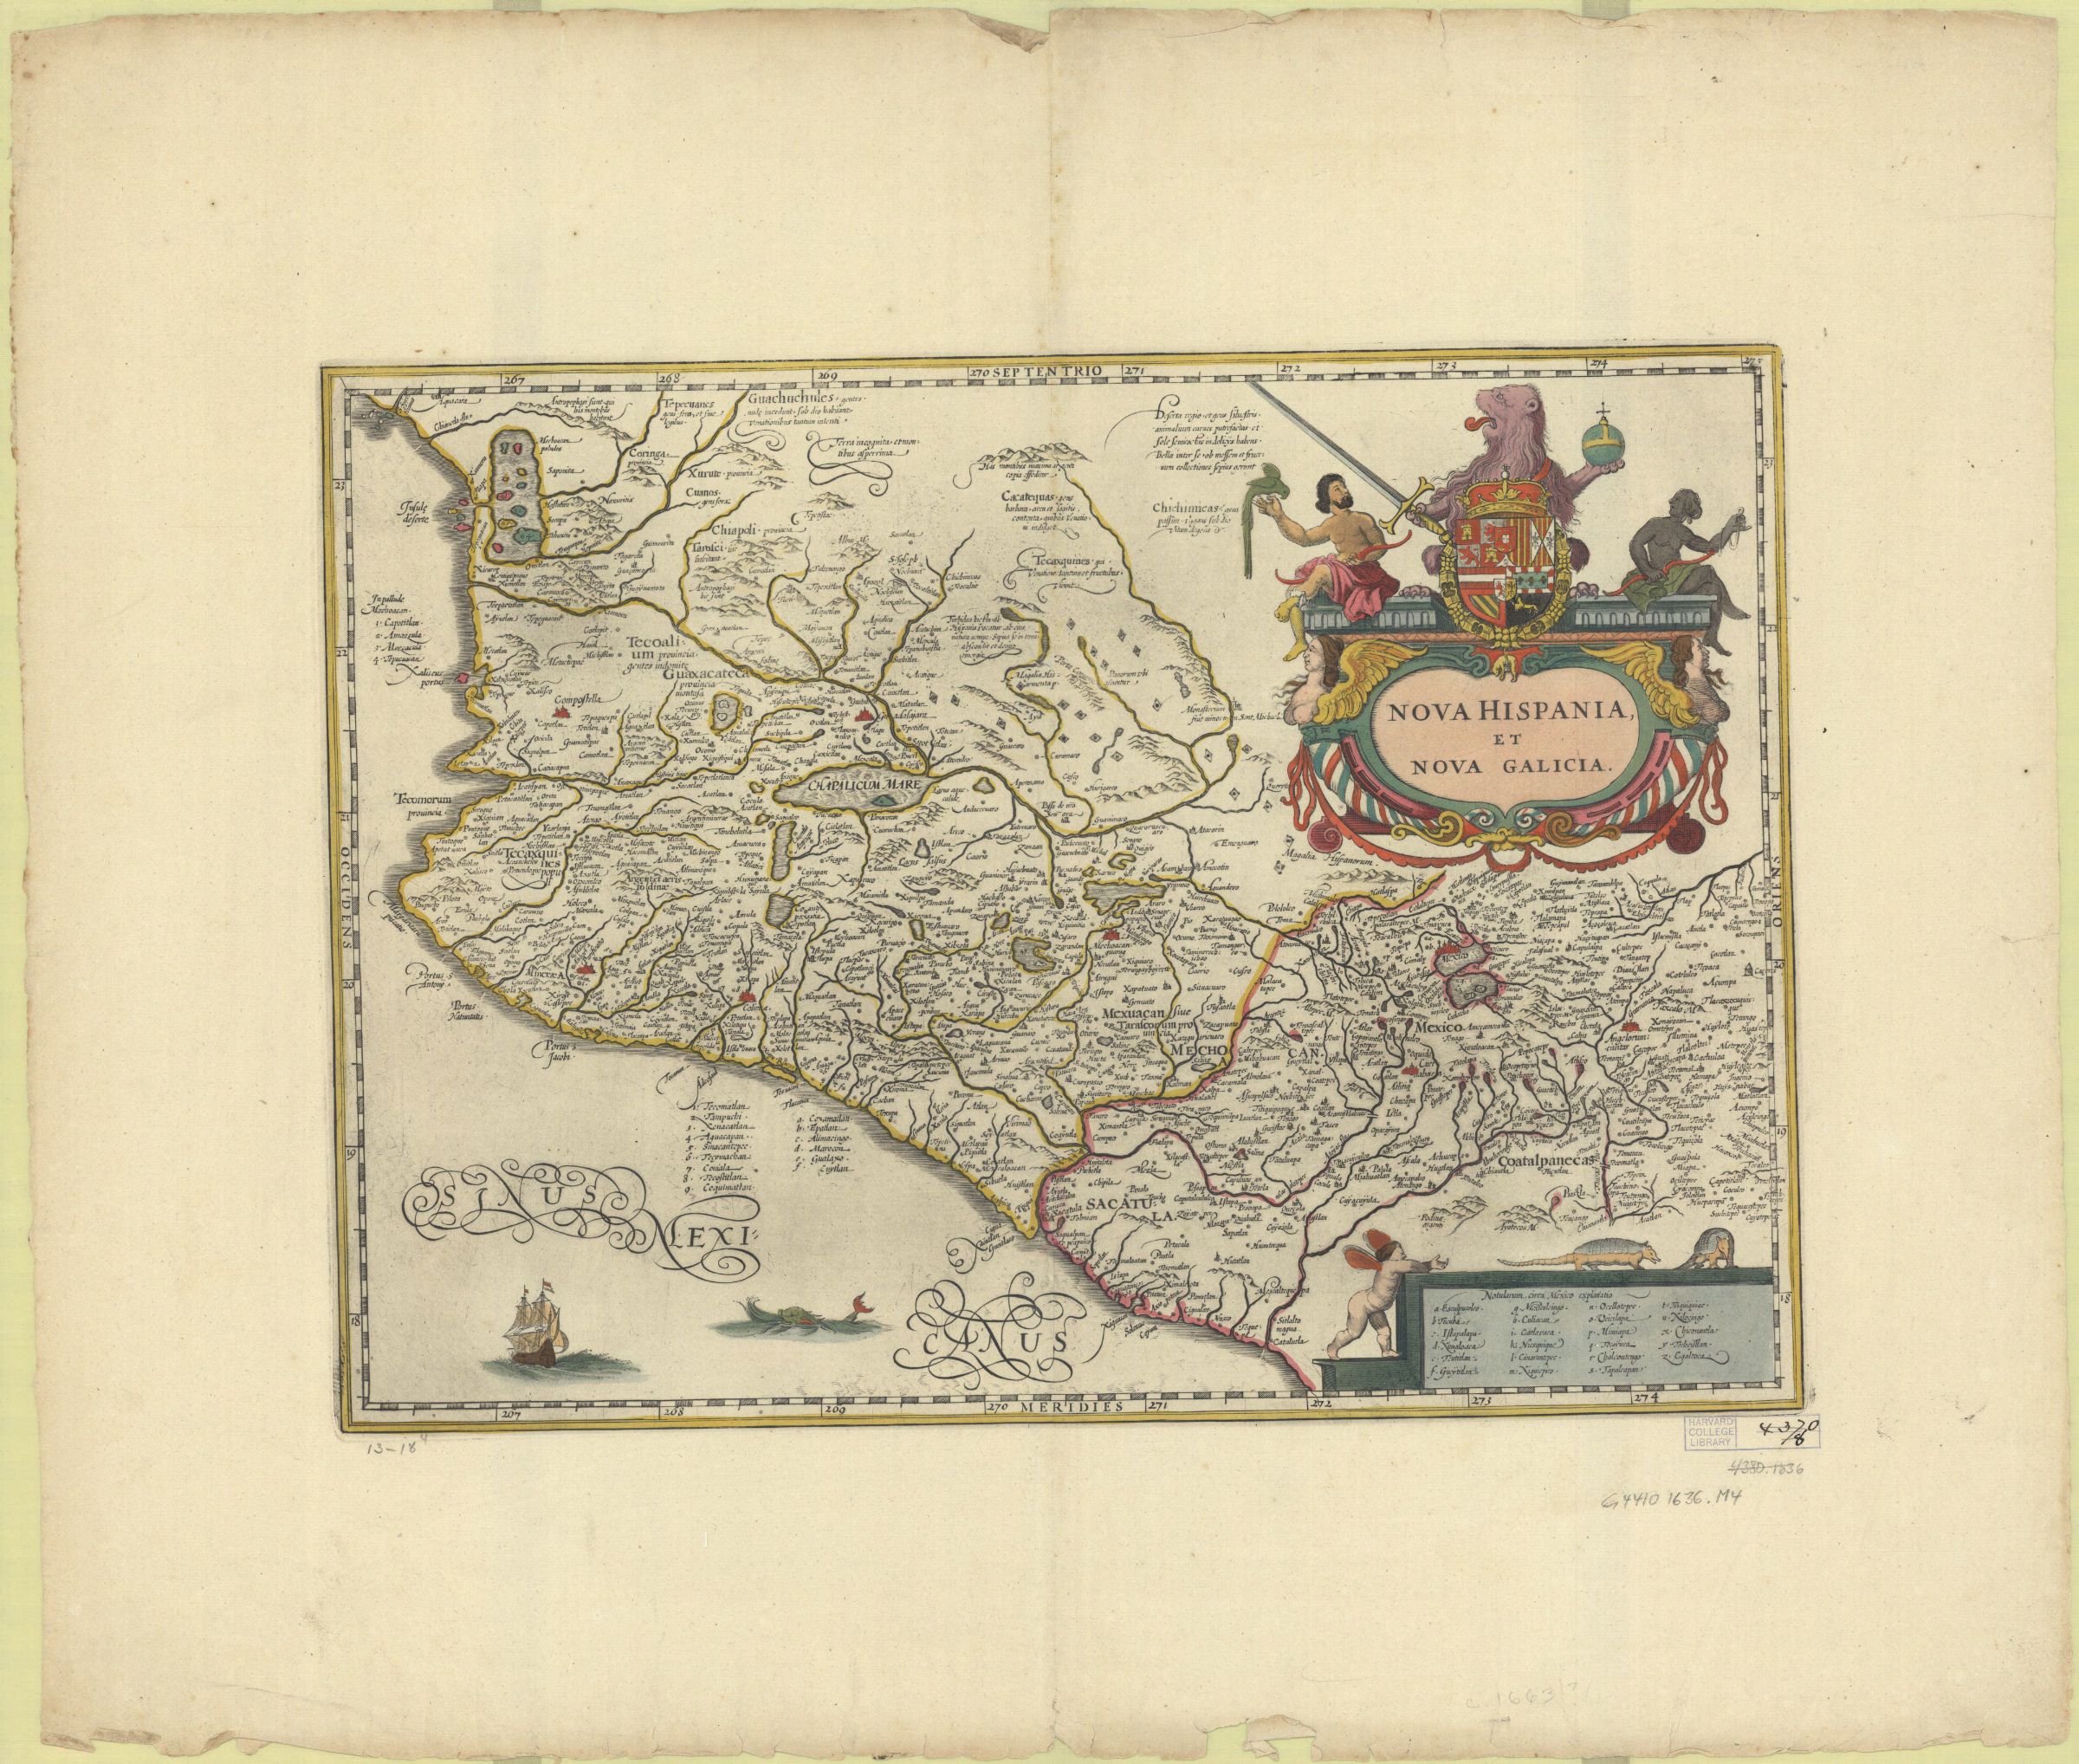 Mapa de Nueva España y Nueva Galicia de Mercator, 1512-1594